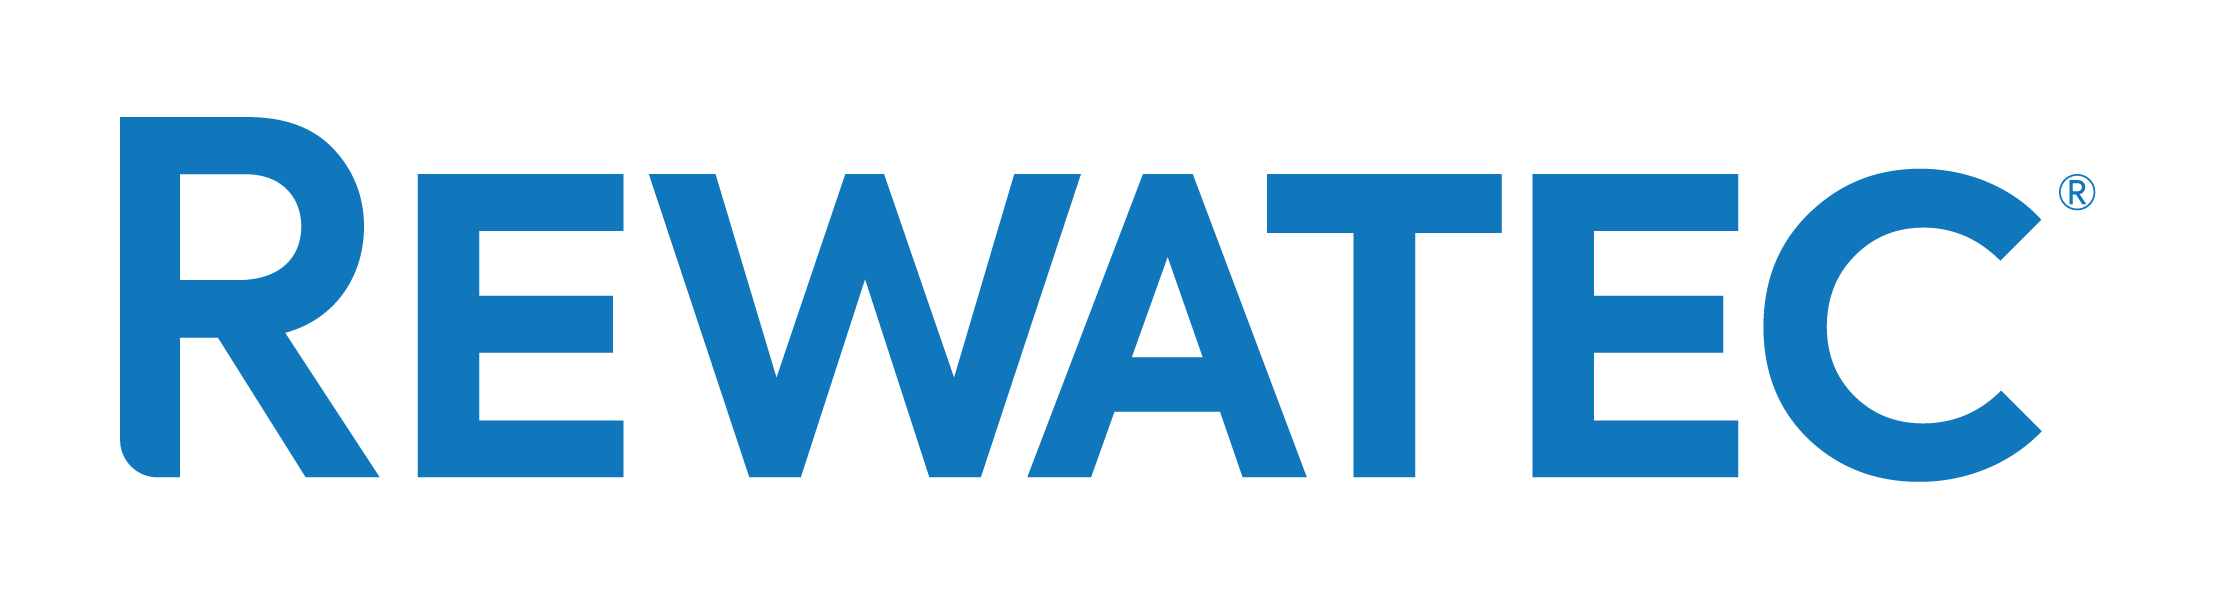 Rewatec-R_Logo-RGB